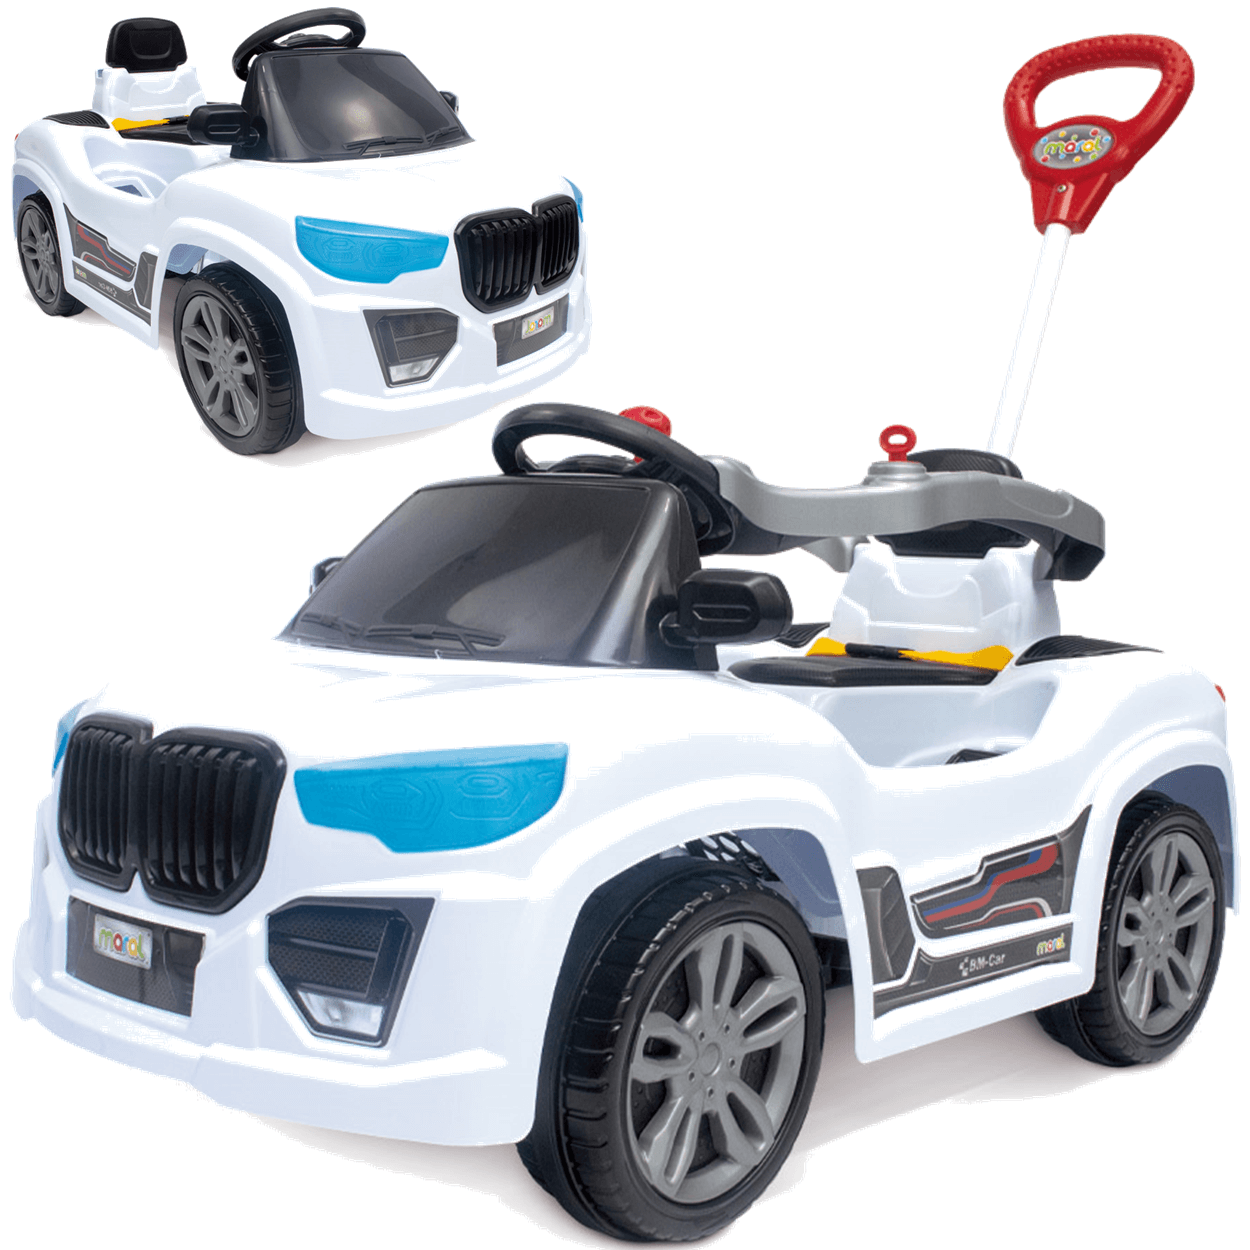 Carrinho de Passeio e Pedal Infantil Maral Bm Car Branco - 1